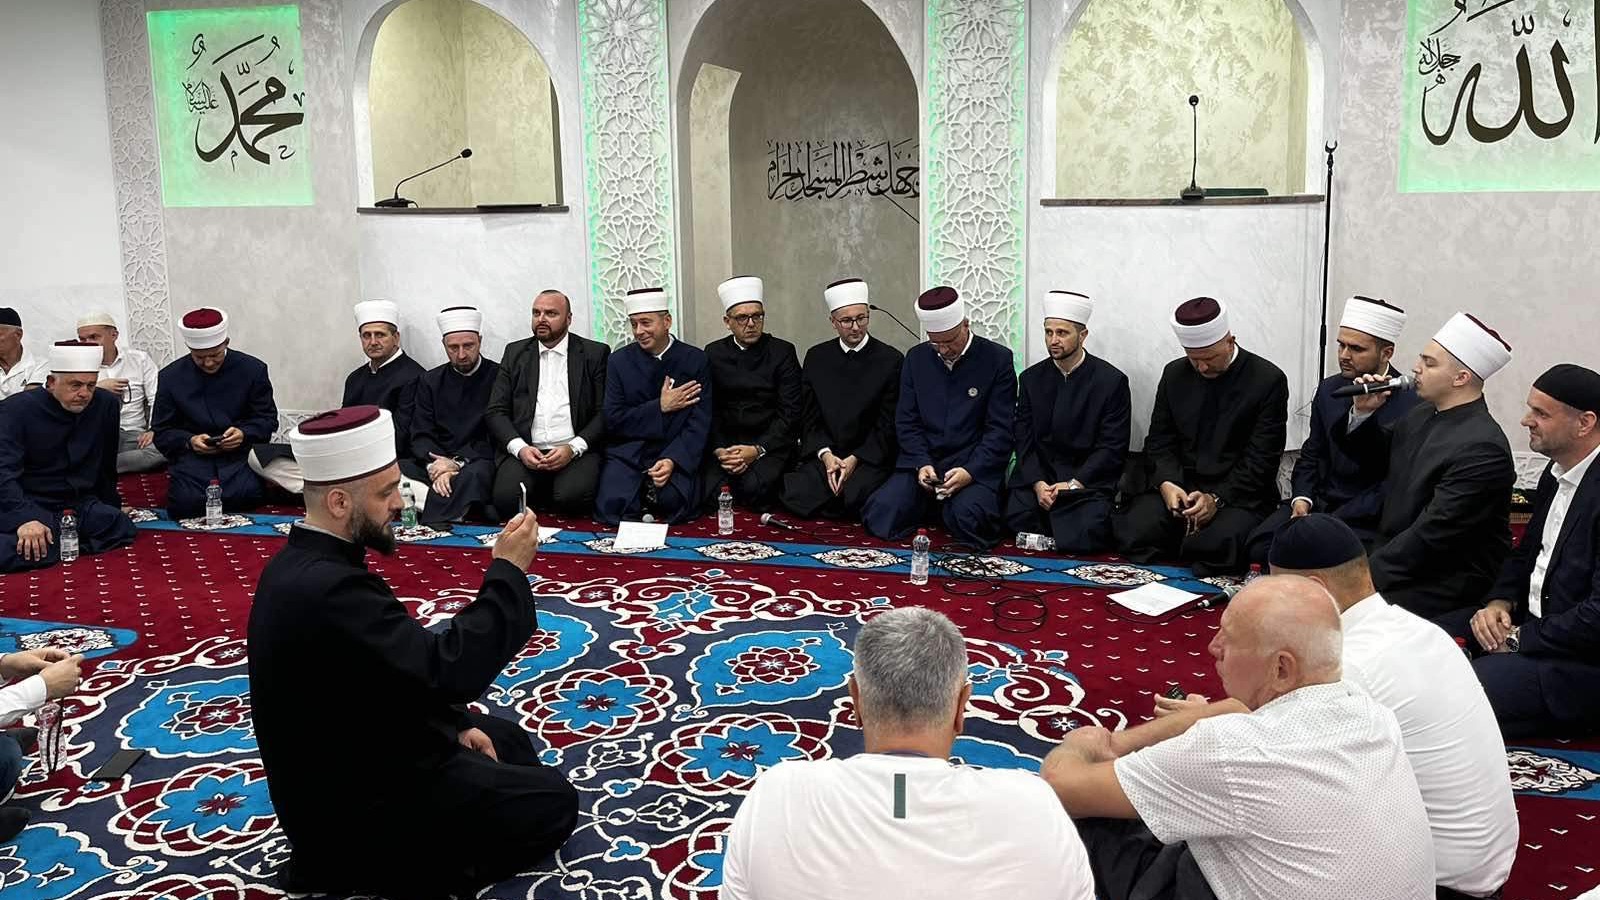 Džemat Liezen: Večer Kur'ana i mevlud uoči otvorenja džamije